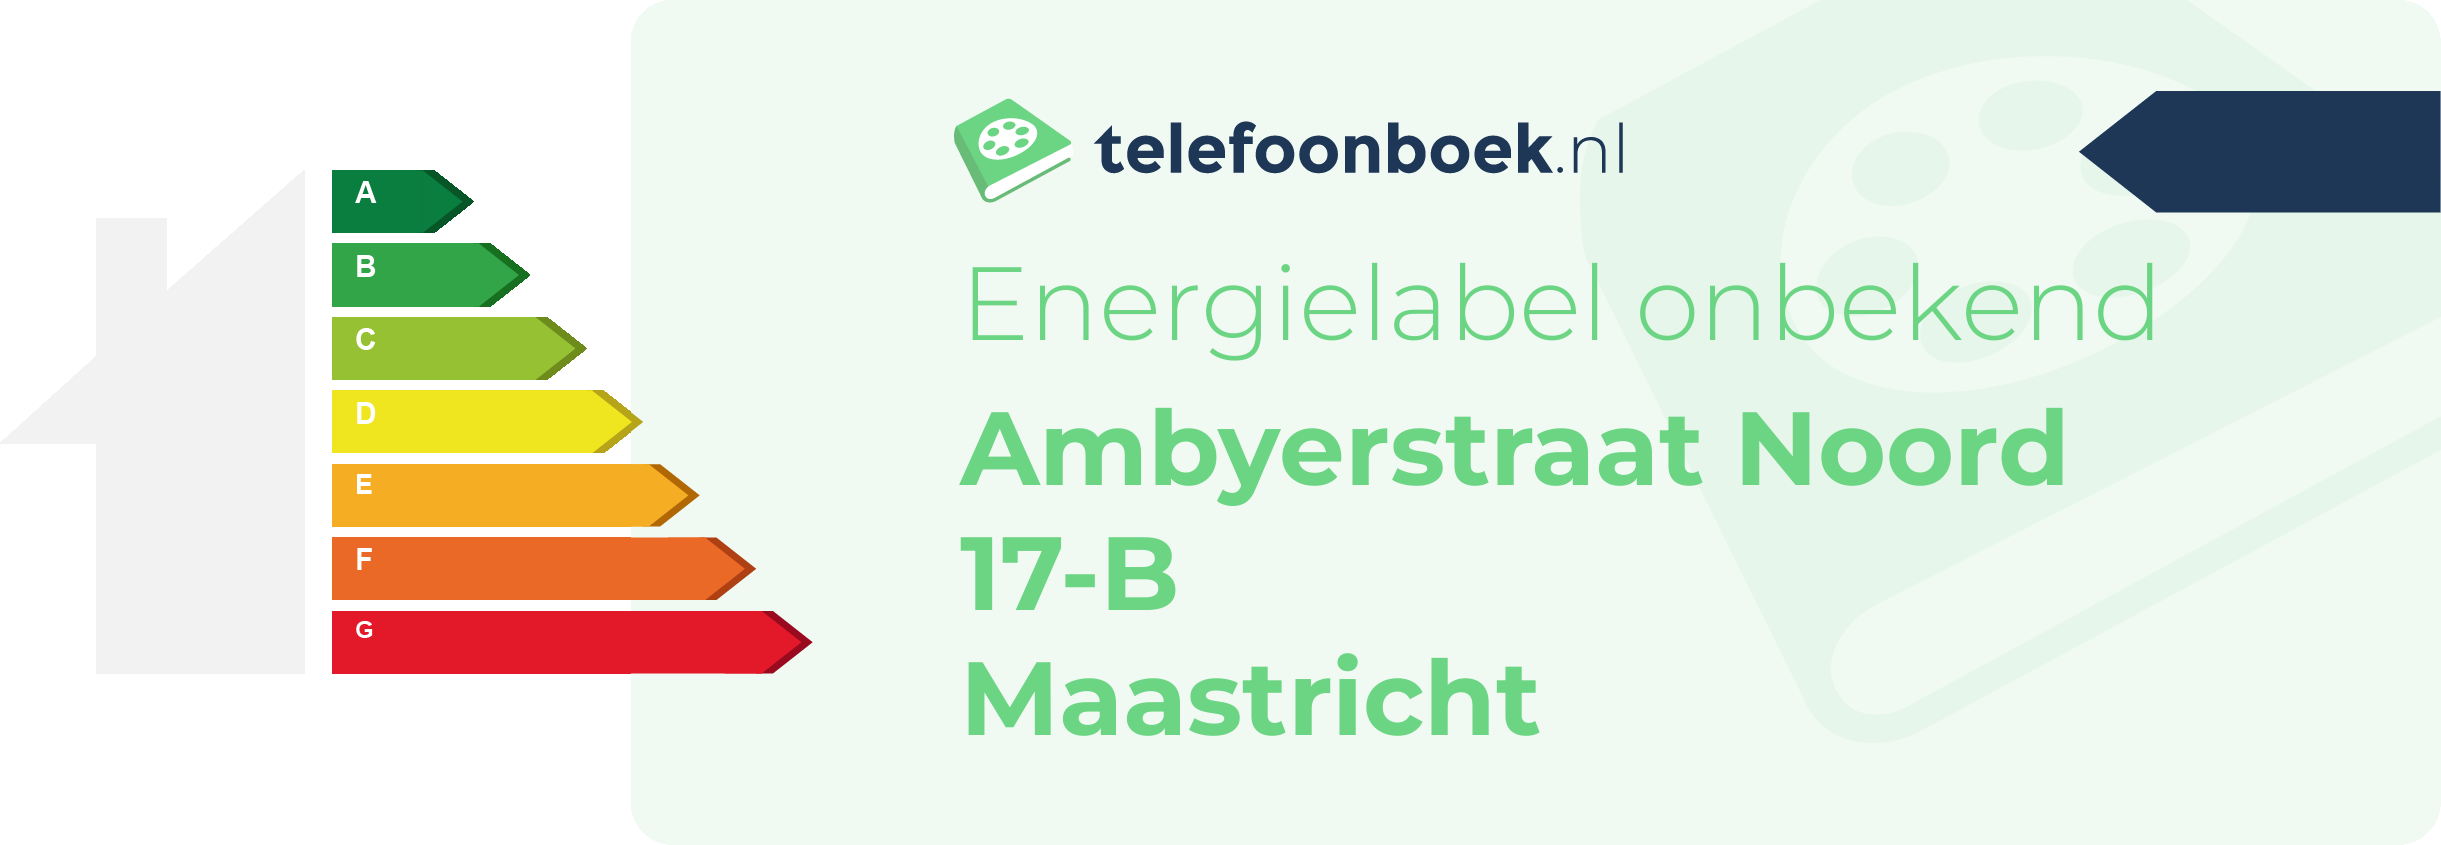 Energielabel Ambyerstraat Noord 17-B Maastricht